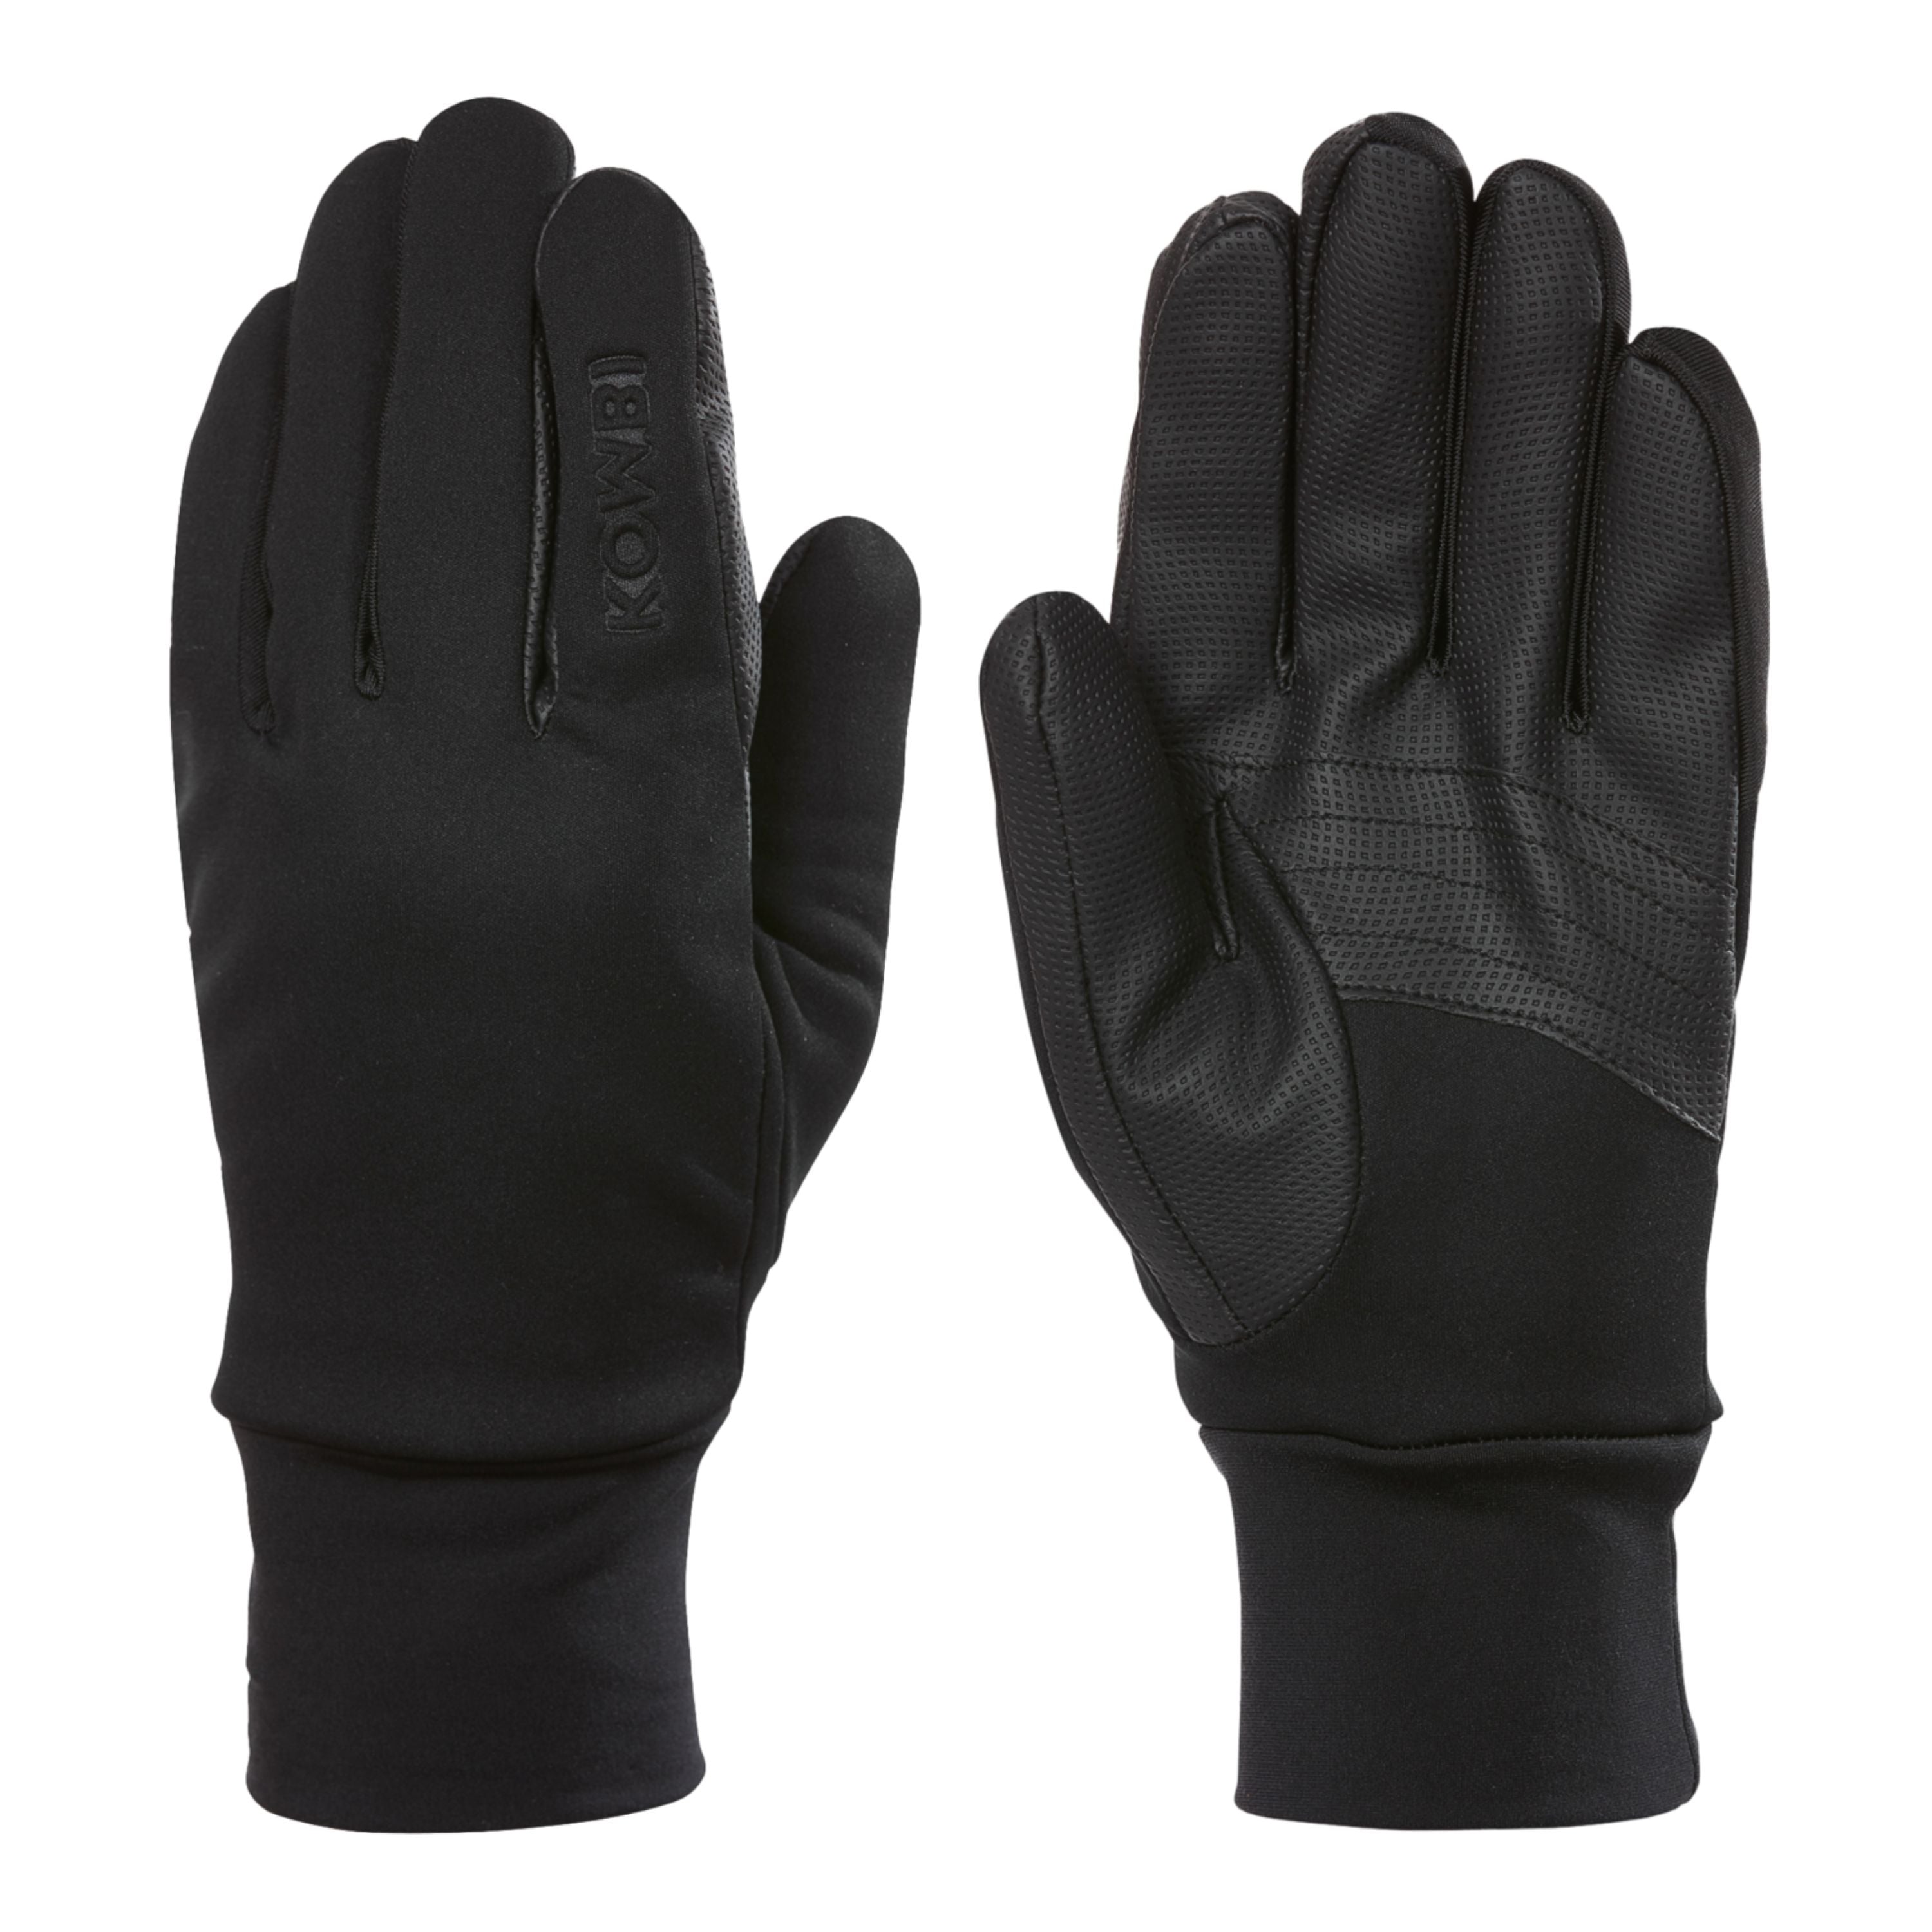 "The winter multi tasker" Gloves - Women’s